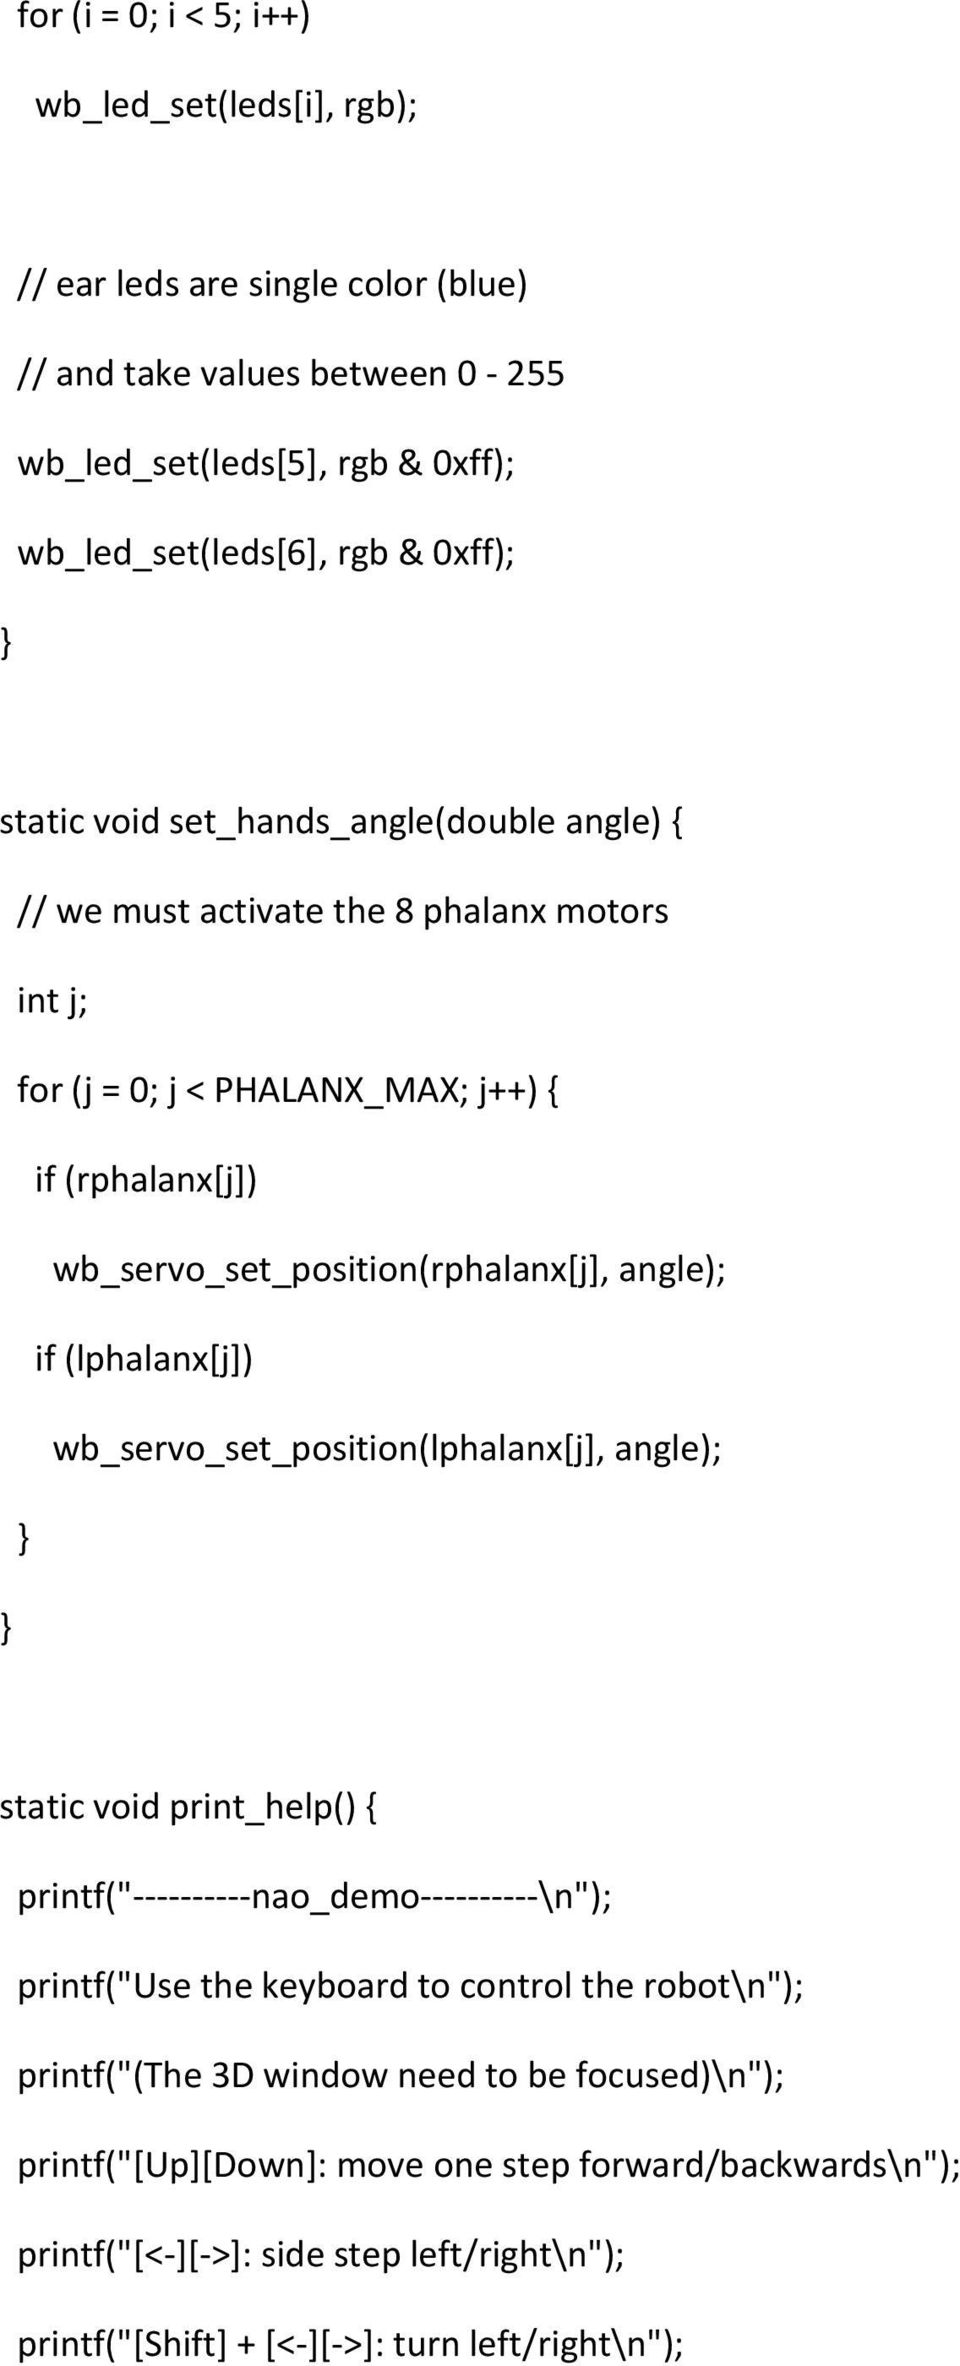 if (lphalanx[j]) wb_servo_set_position(lphalanx[j], angle); static void print_help() { printf("----------nao_demo----------\n"); printf("use the keyboard to control the robot\n");